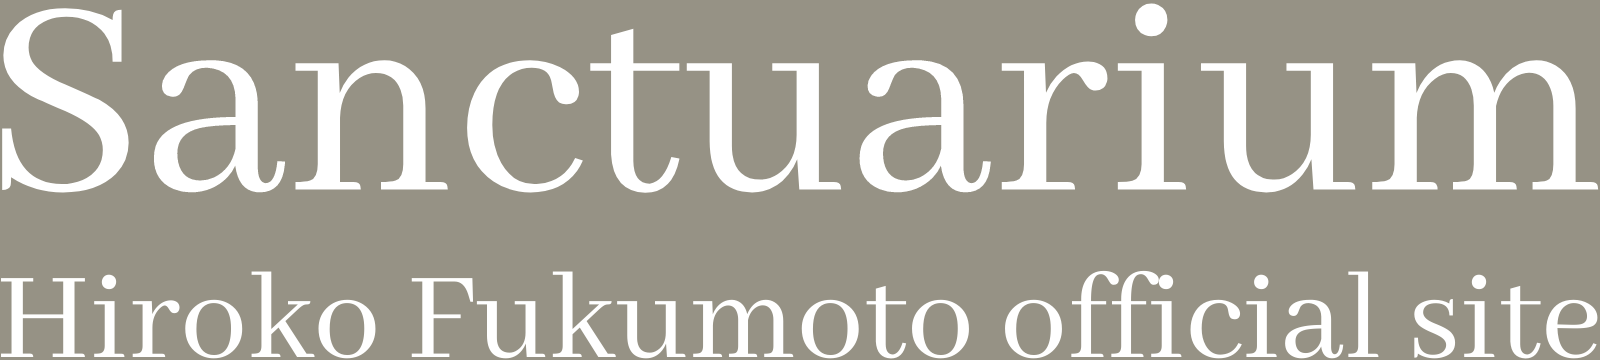 Sanctuarium hirokofukumoto official site